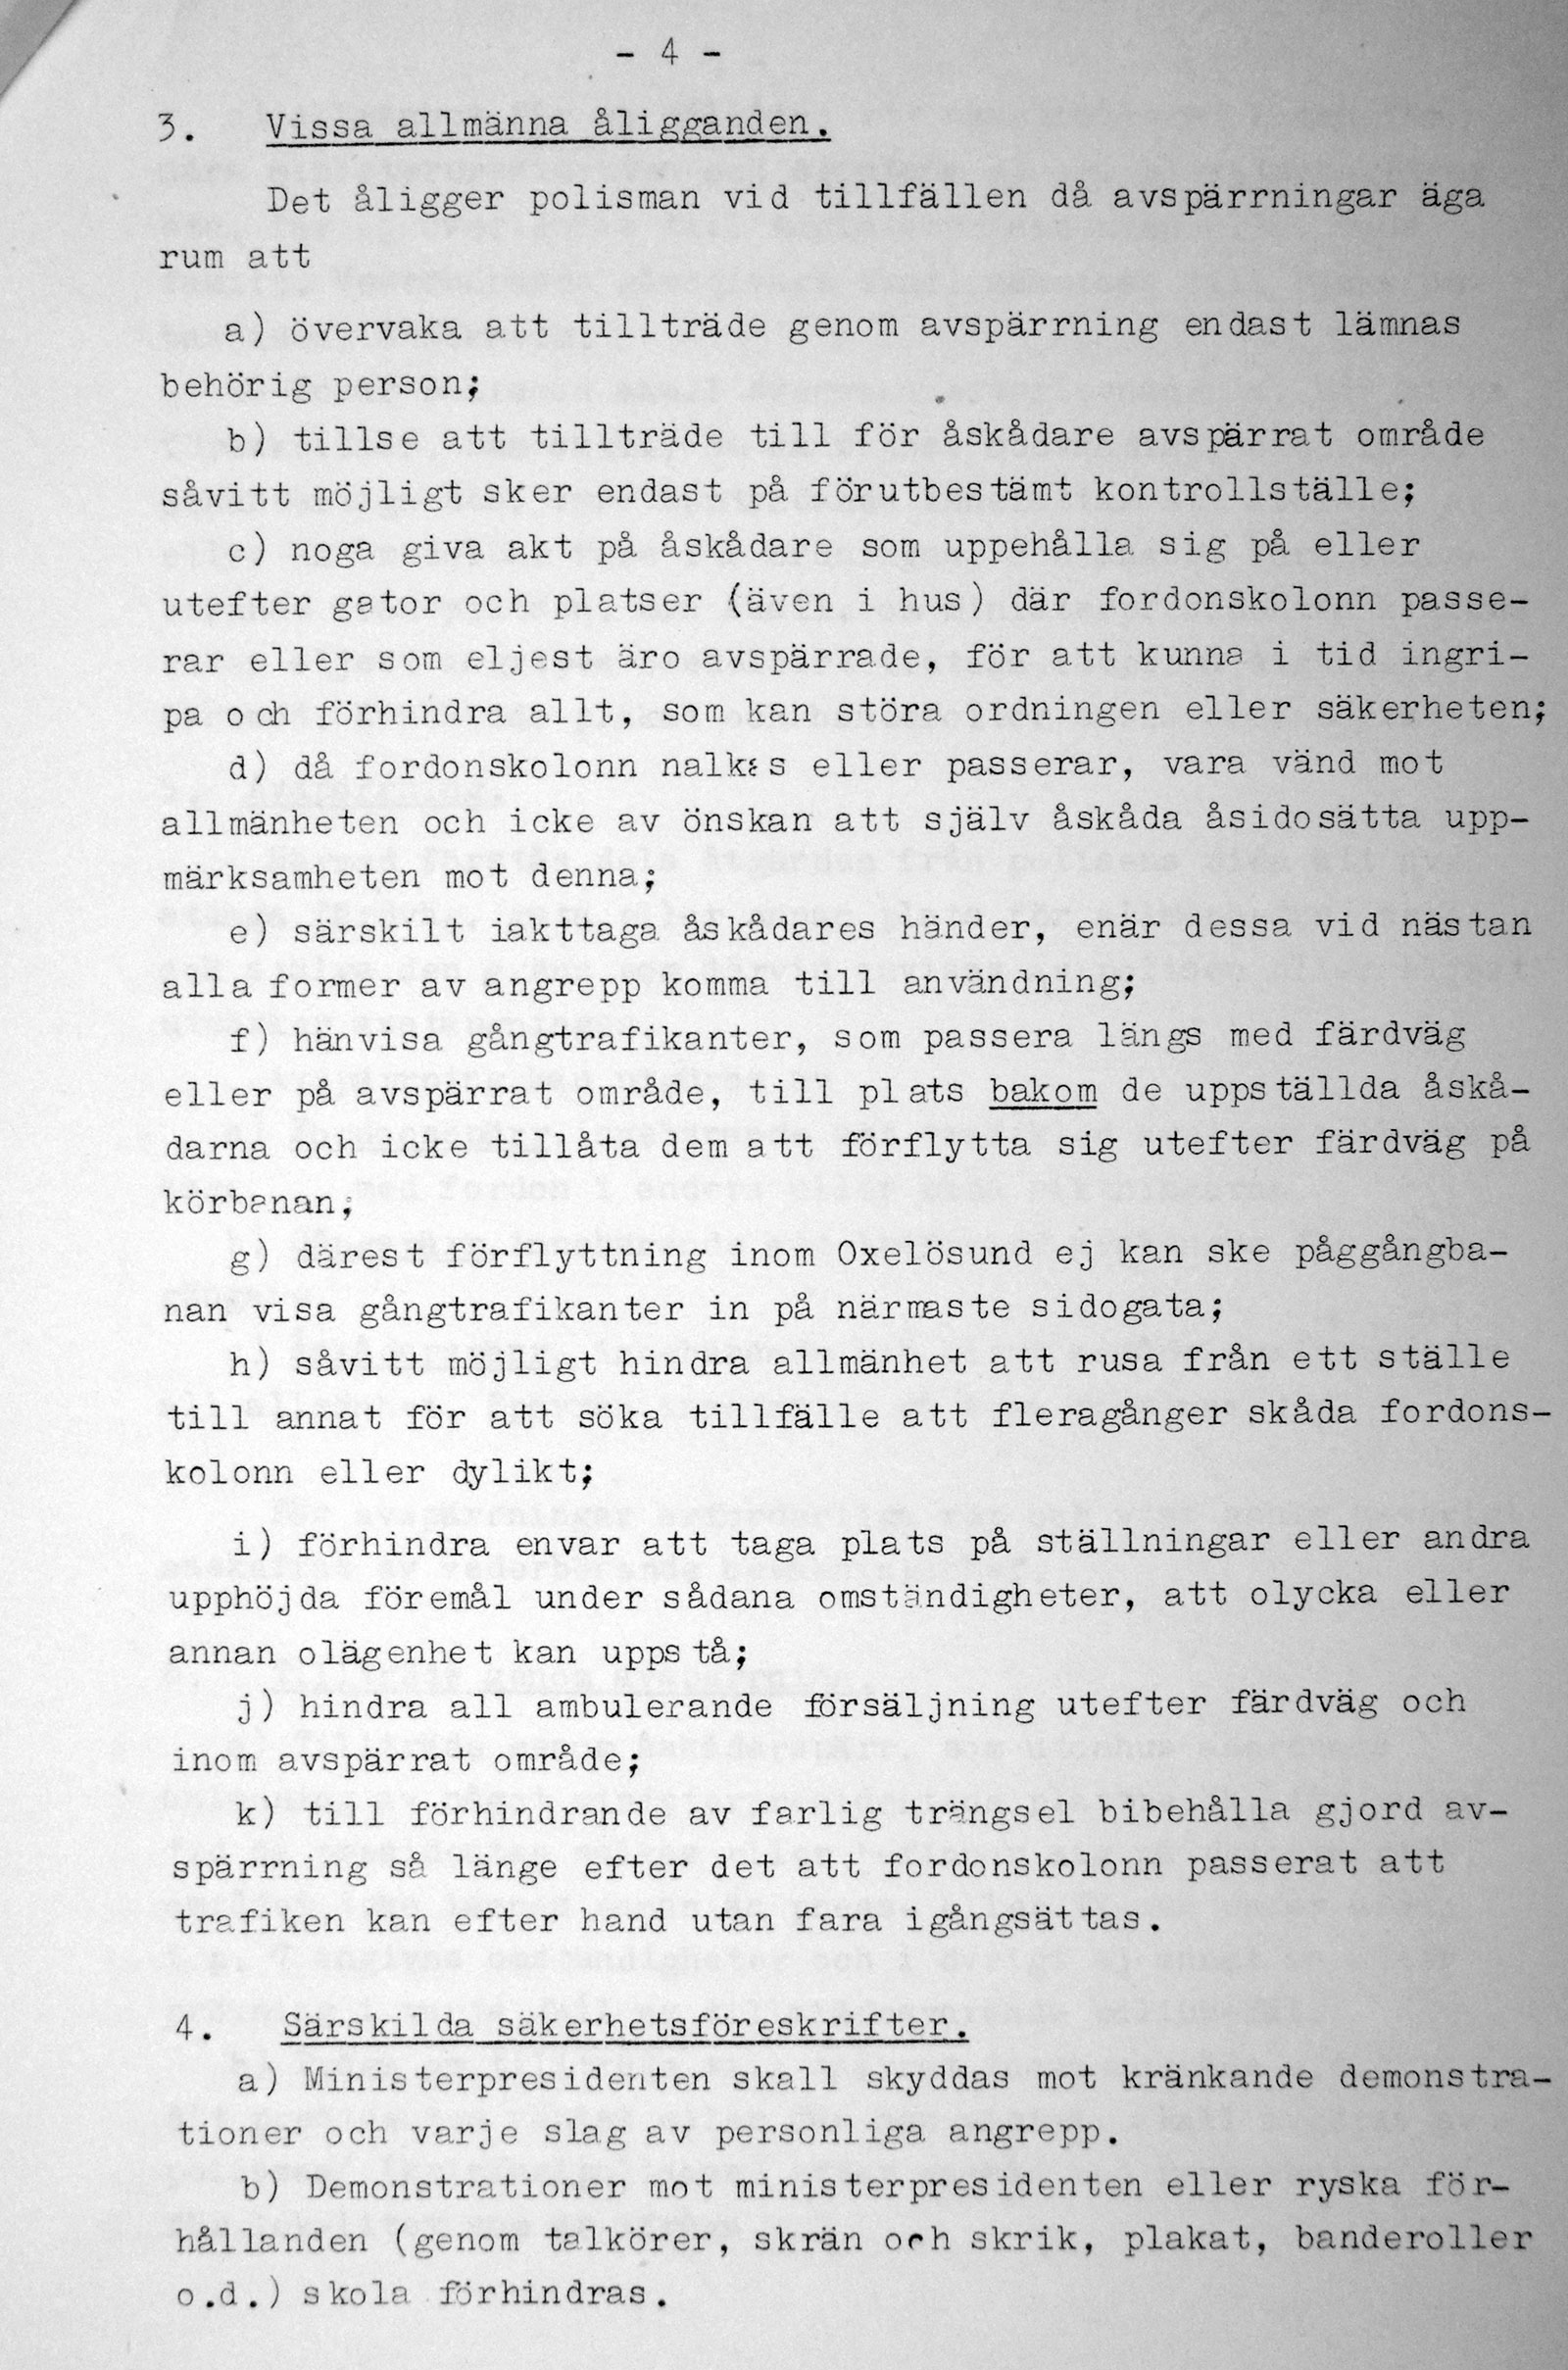 Kommenderingsorder beträffande ministerpresidenten Chrustjovs besök i Södermanlands län den 25 och 26 juni 1964.